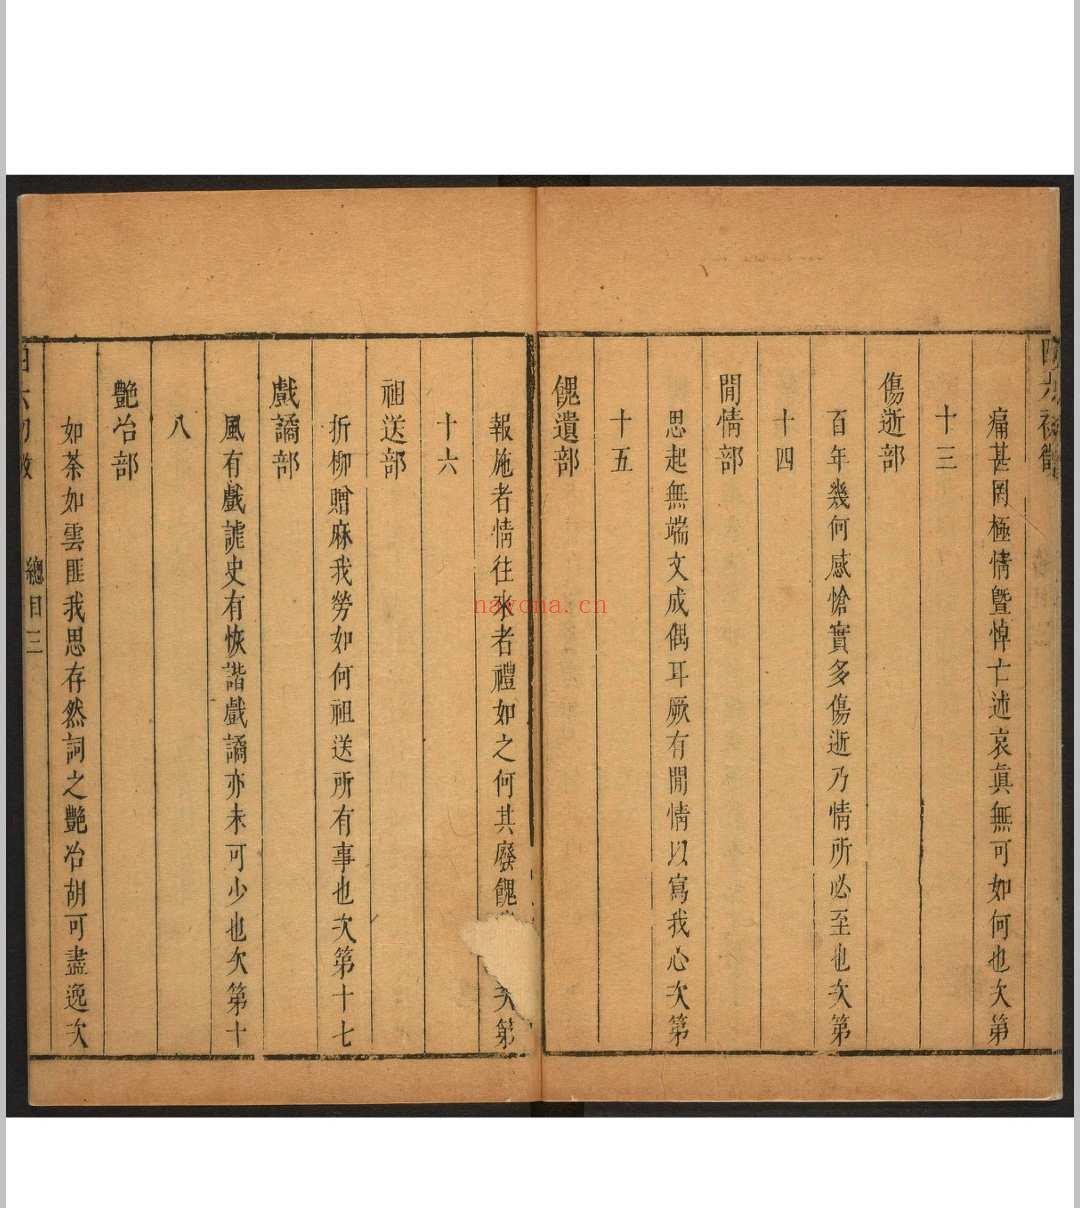 四六初徵 二十卷 李渔辑 沉心友校释.金陵  翼圣堂, [1671]